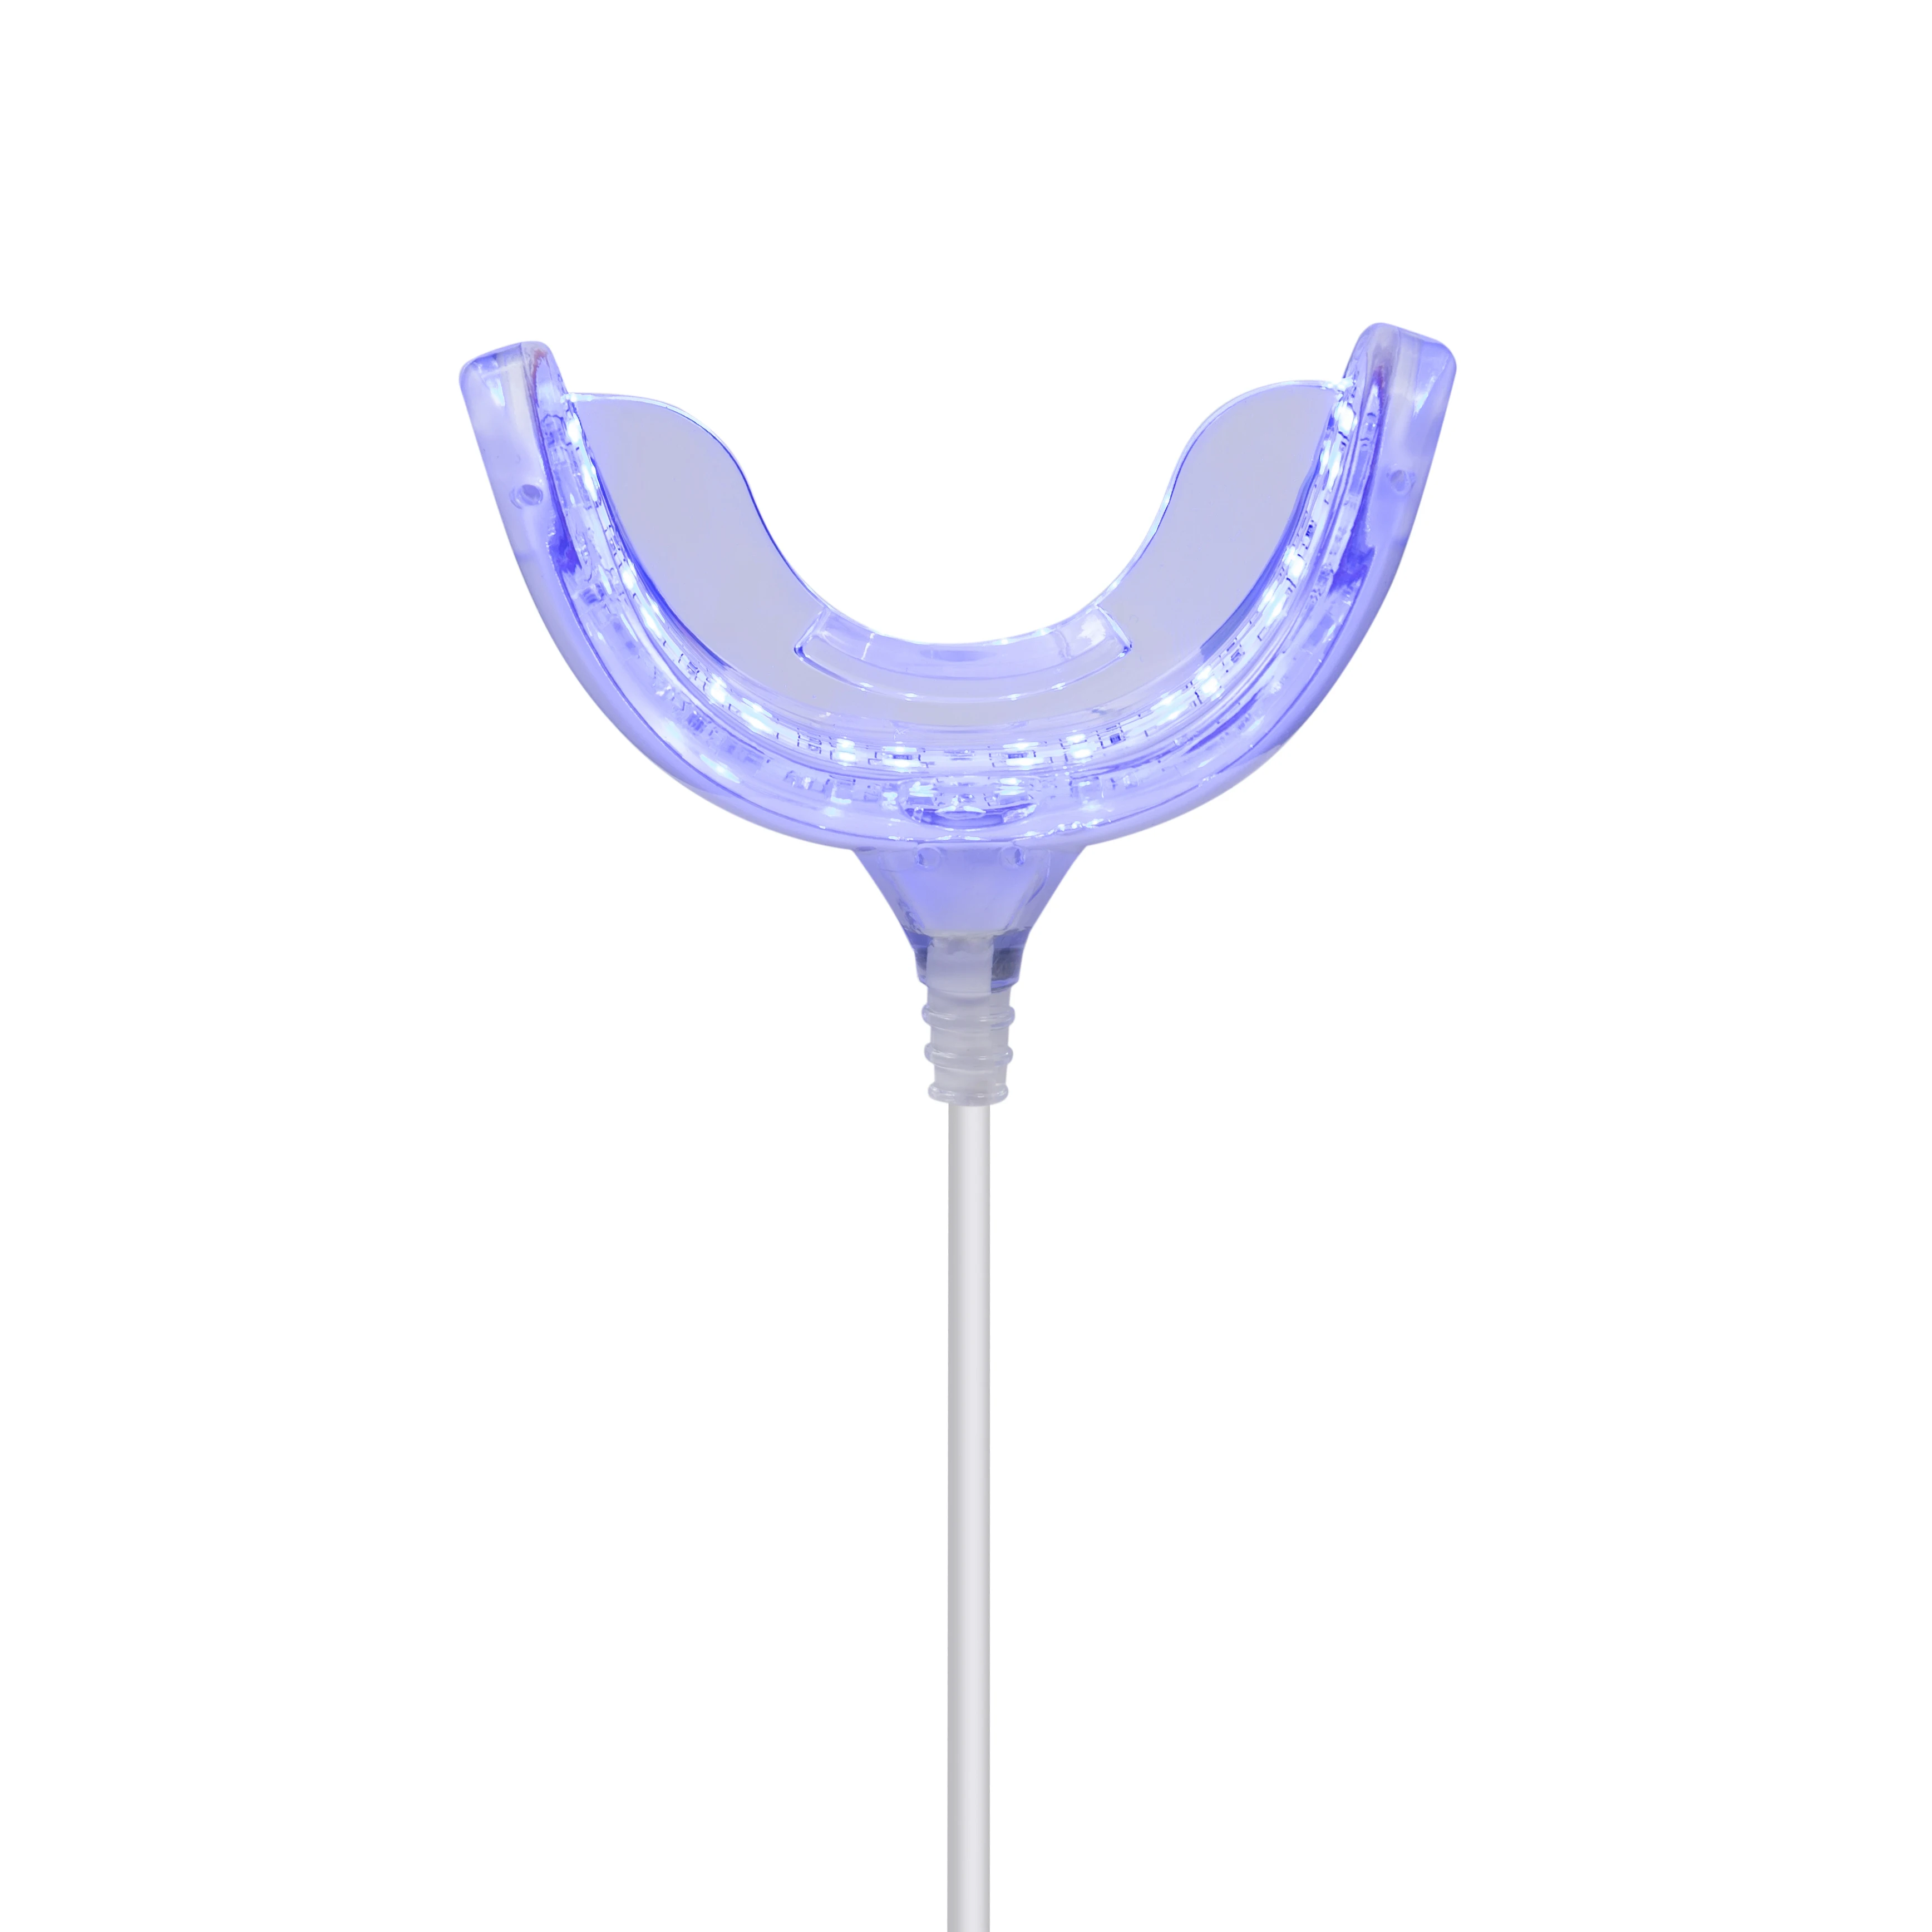 Портативный 16 светодиодный светильник для отбеливания зубов для Smart Iphone/android/usb-разъем, набор для отбеливания зубов, система отбеливания зубов, устройство